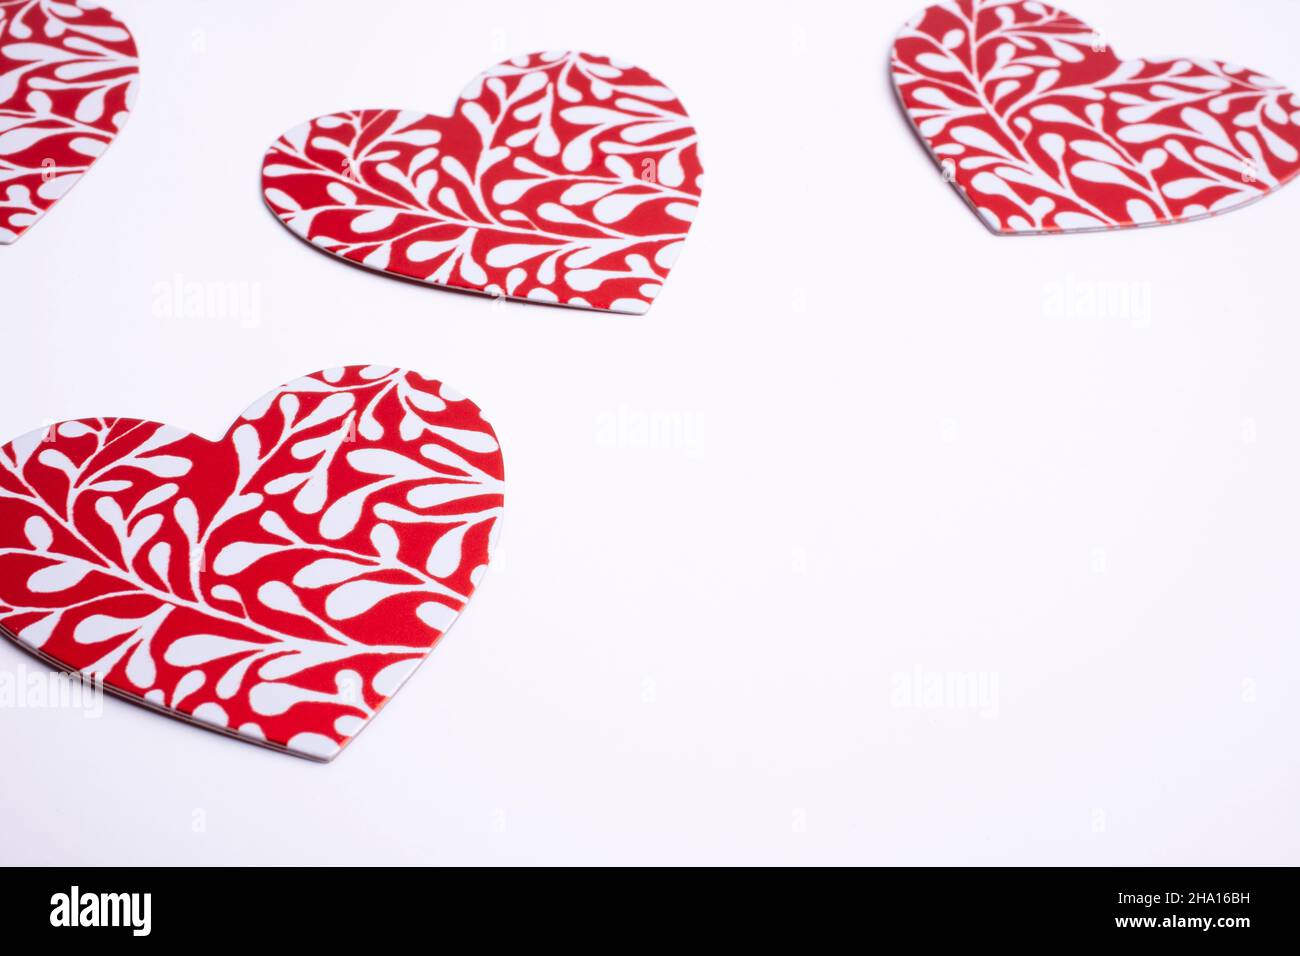 Rote Herzen Formen sich auf weißem Hintergrund. Valentinstag - Copyspace Stockfoto